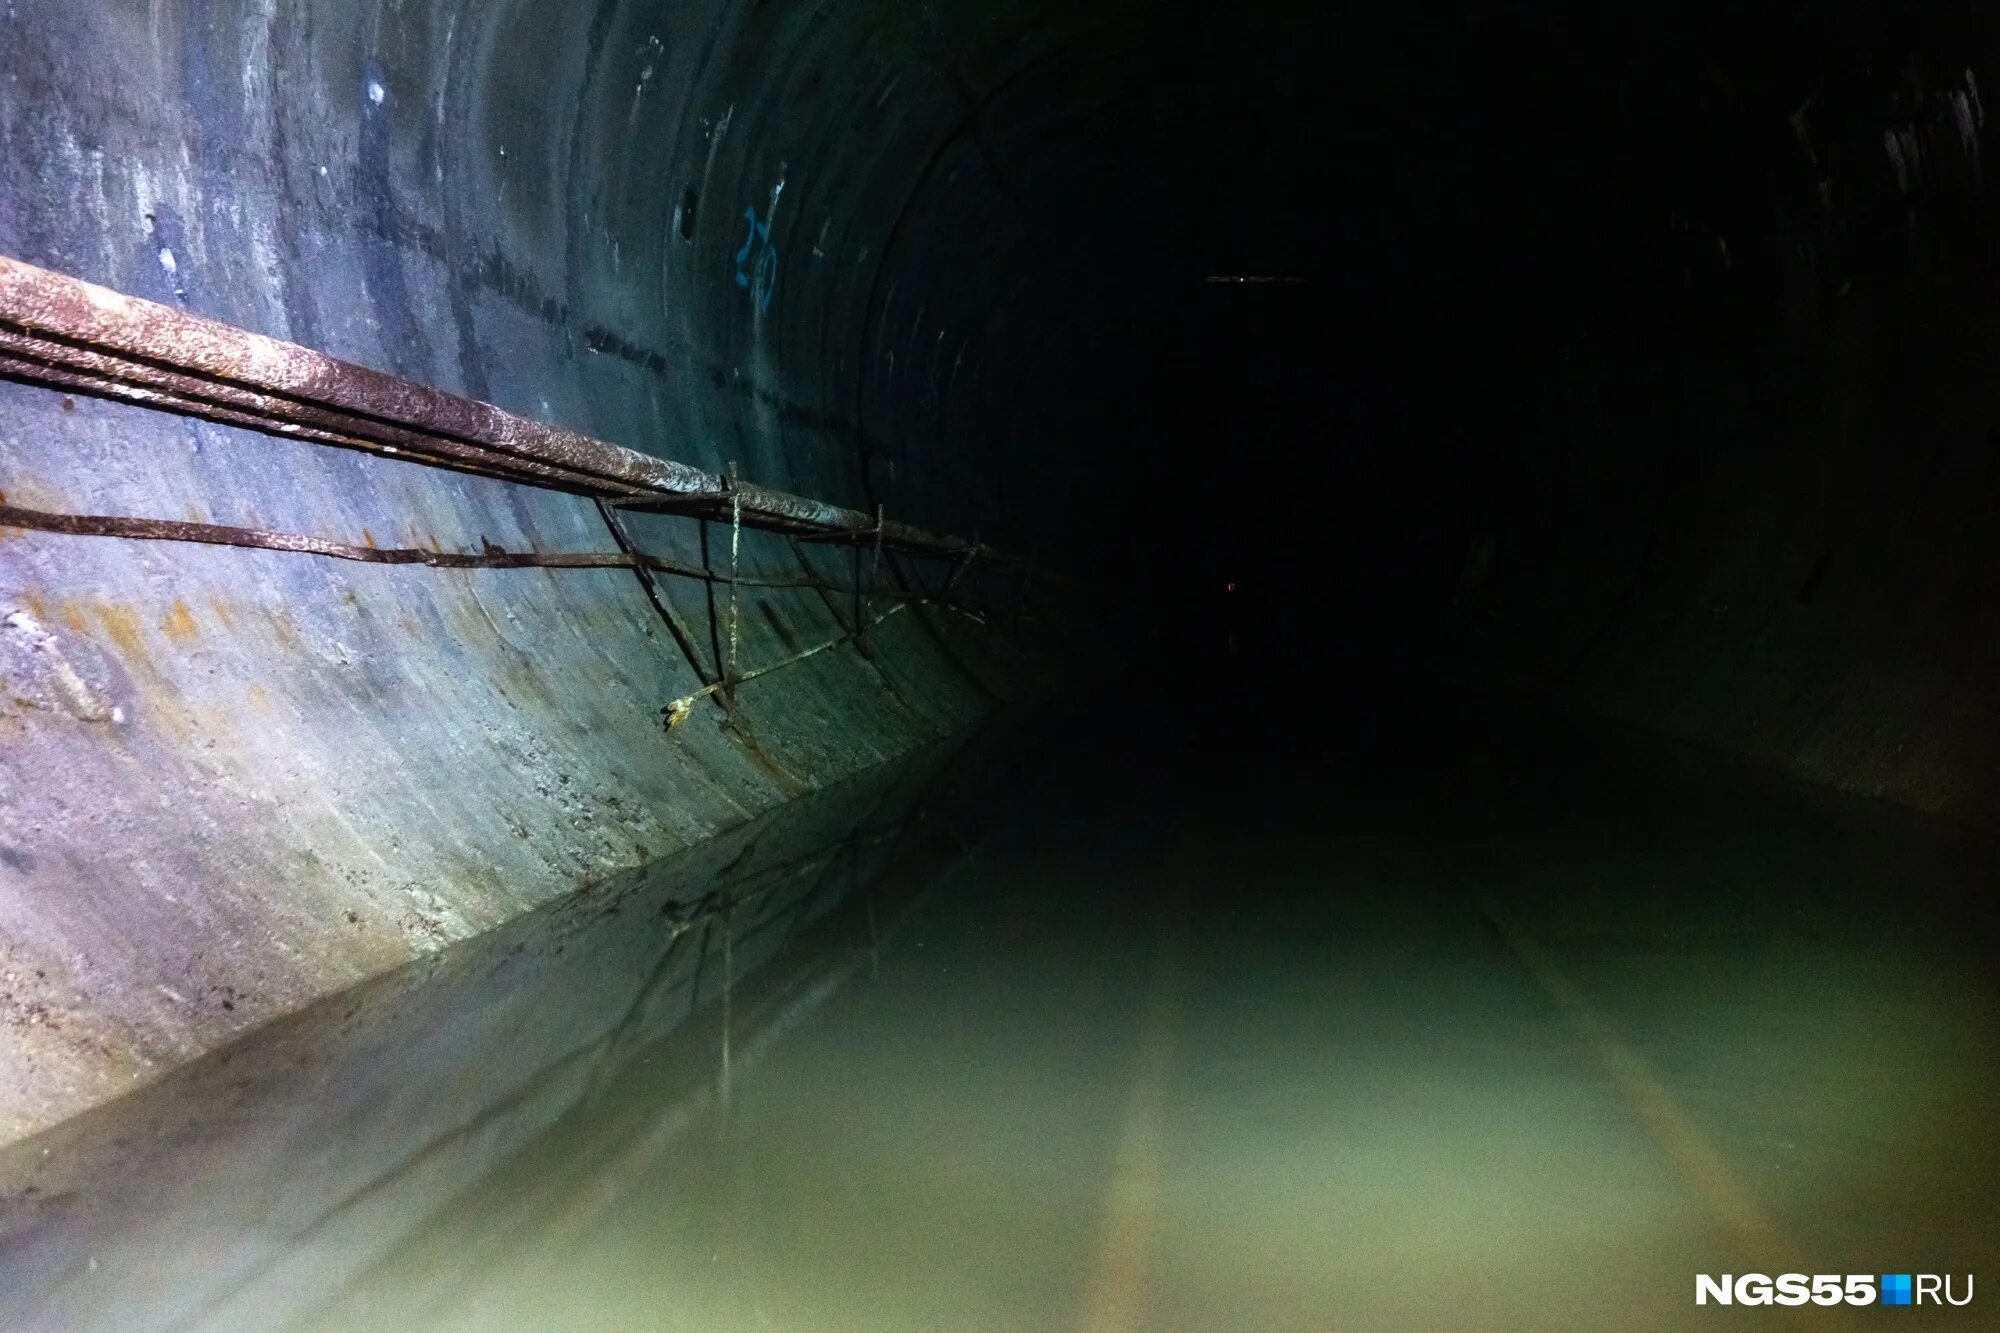 Метро Омска туннель. Затопленный тоннель метро. Затопление тоннеля метро. Омское метро затопленное. Омск под водой